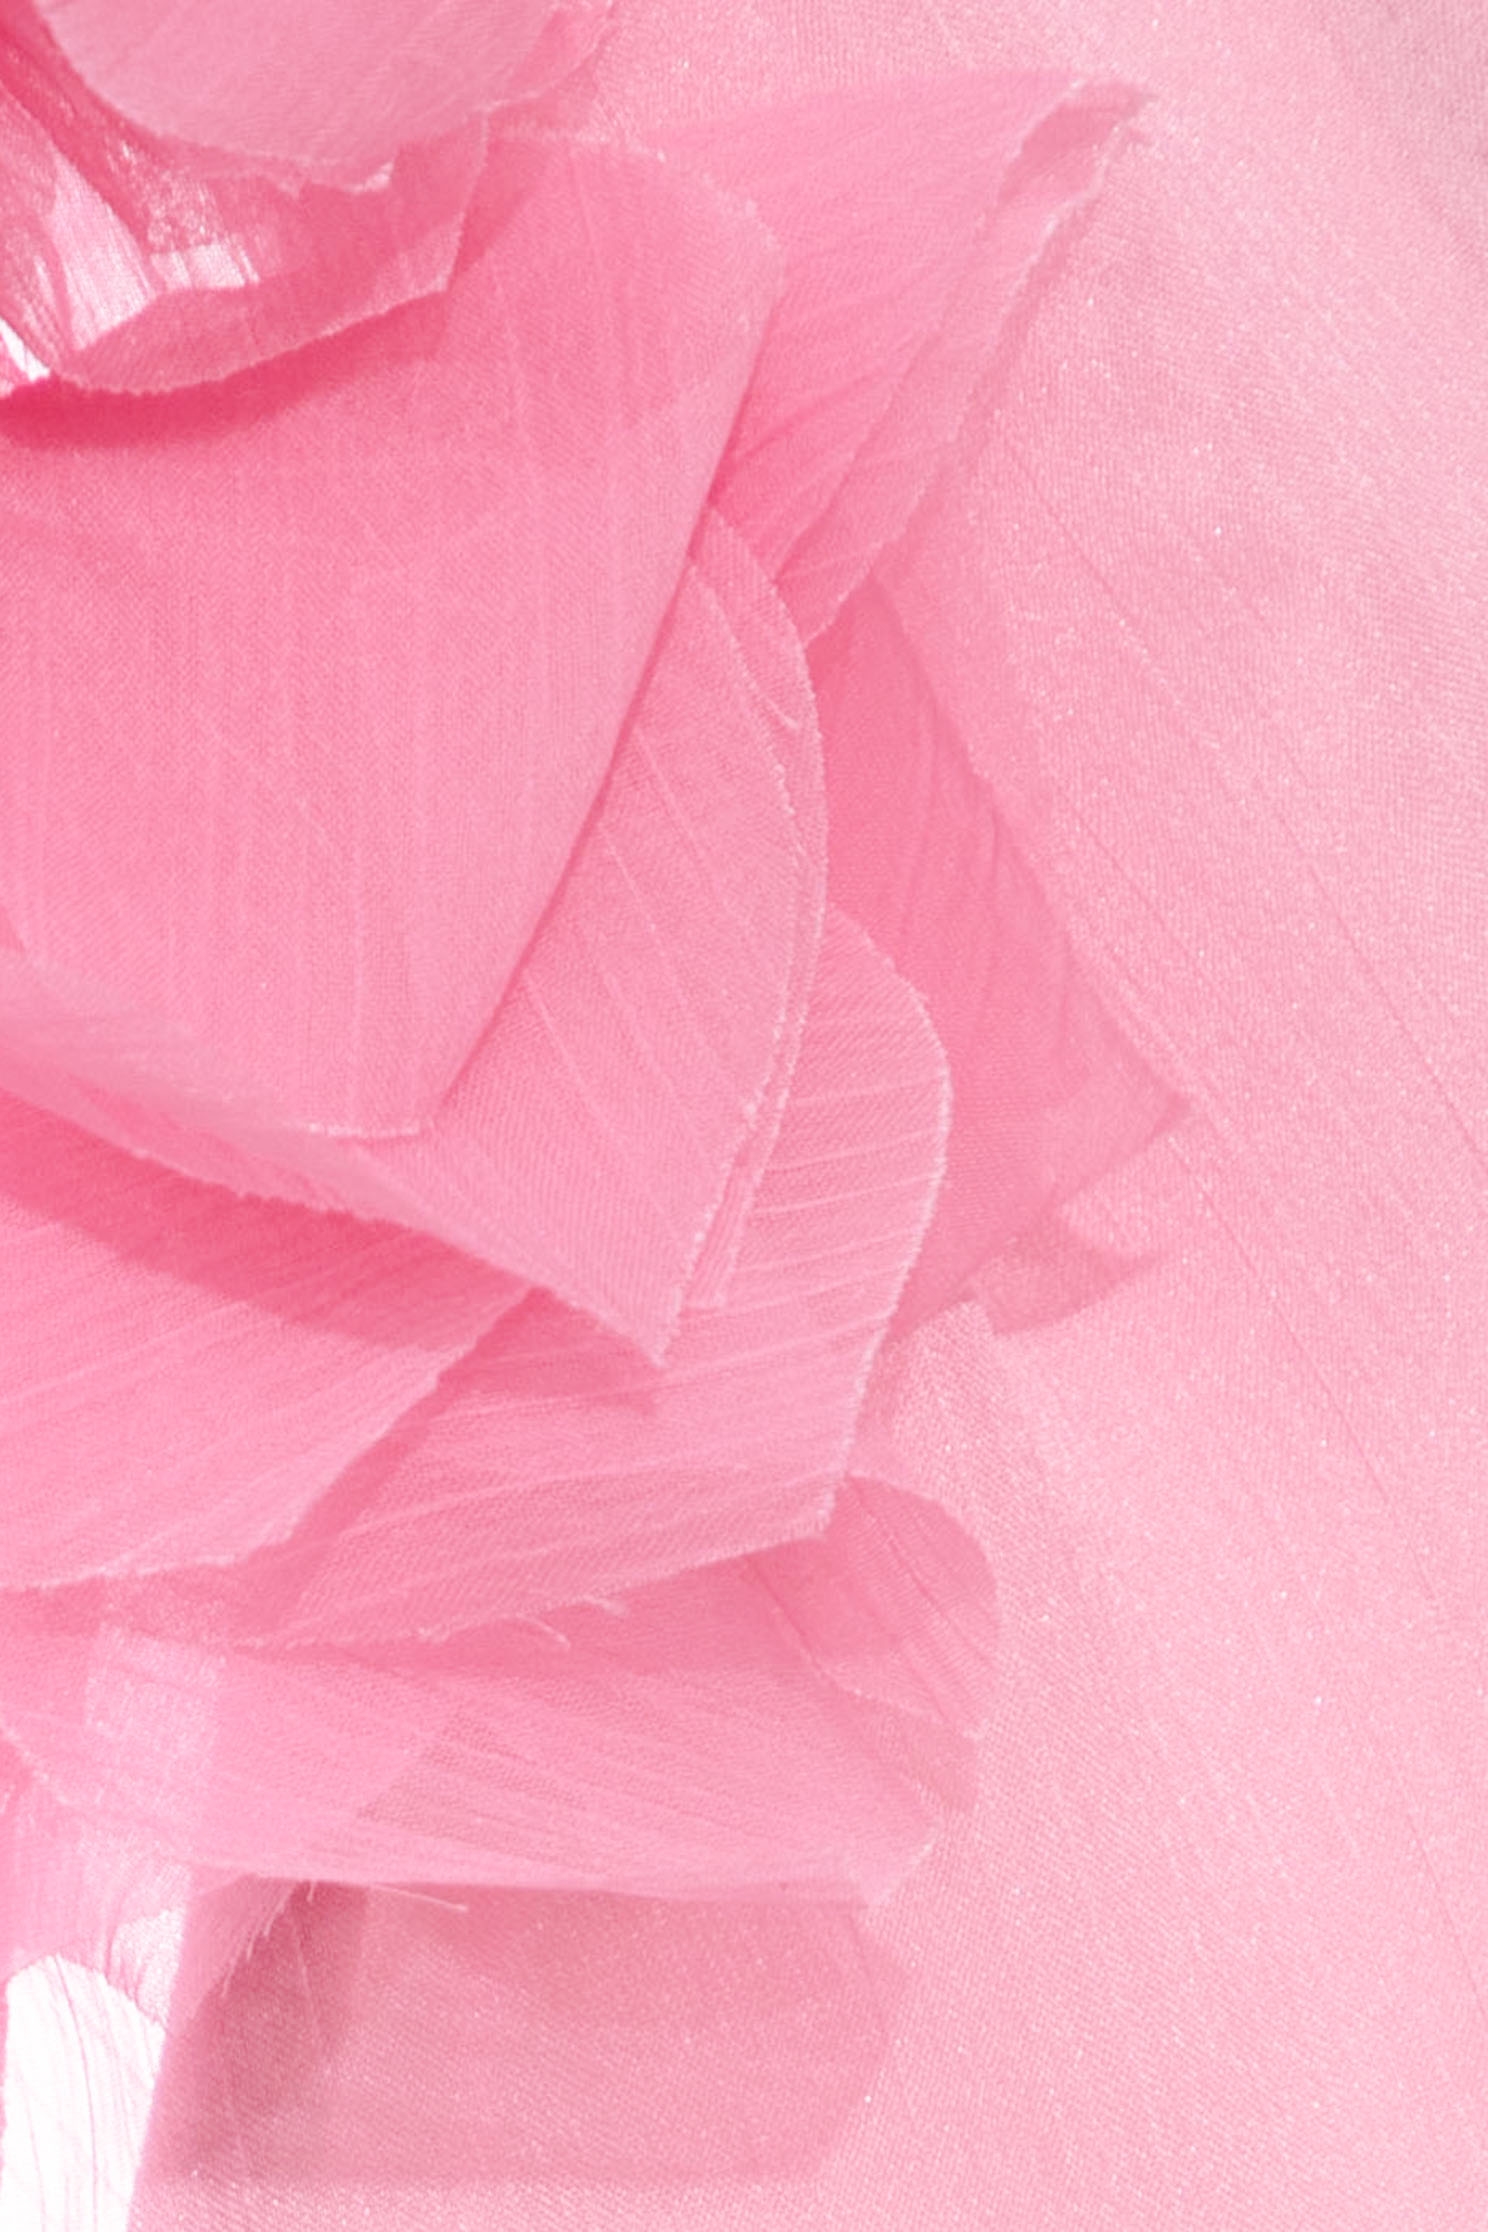 桃粉色飄逸上衣,長袖 上衣,粉色 上衣,荷葉 上衣桃粉色飄逸上衣,上衣,人氣商品,內搭上衣,春夏穿搭